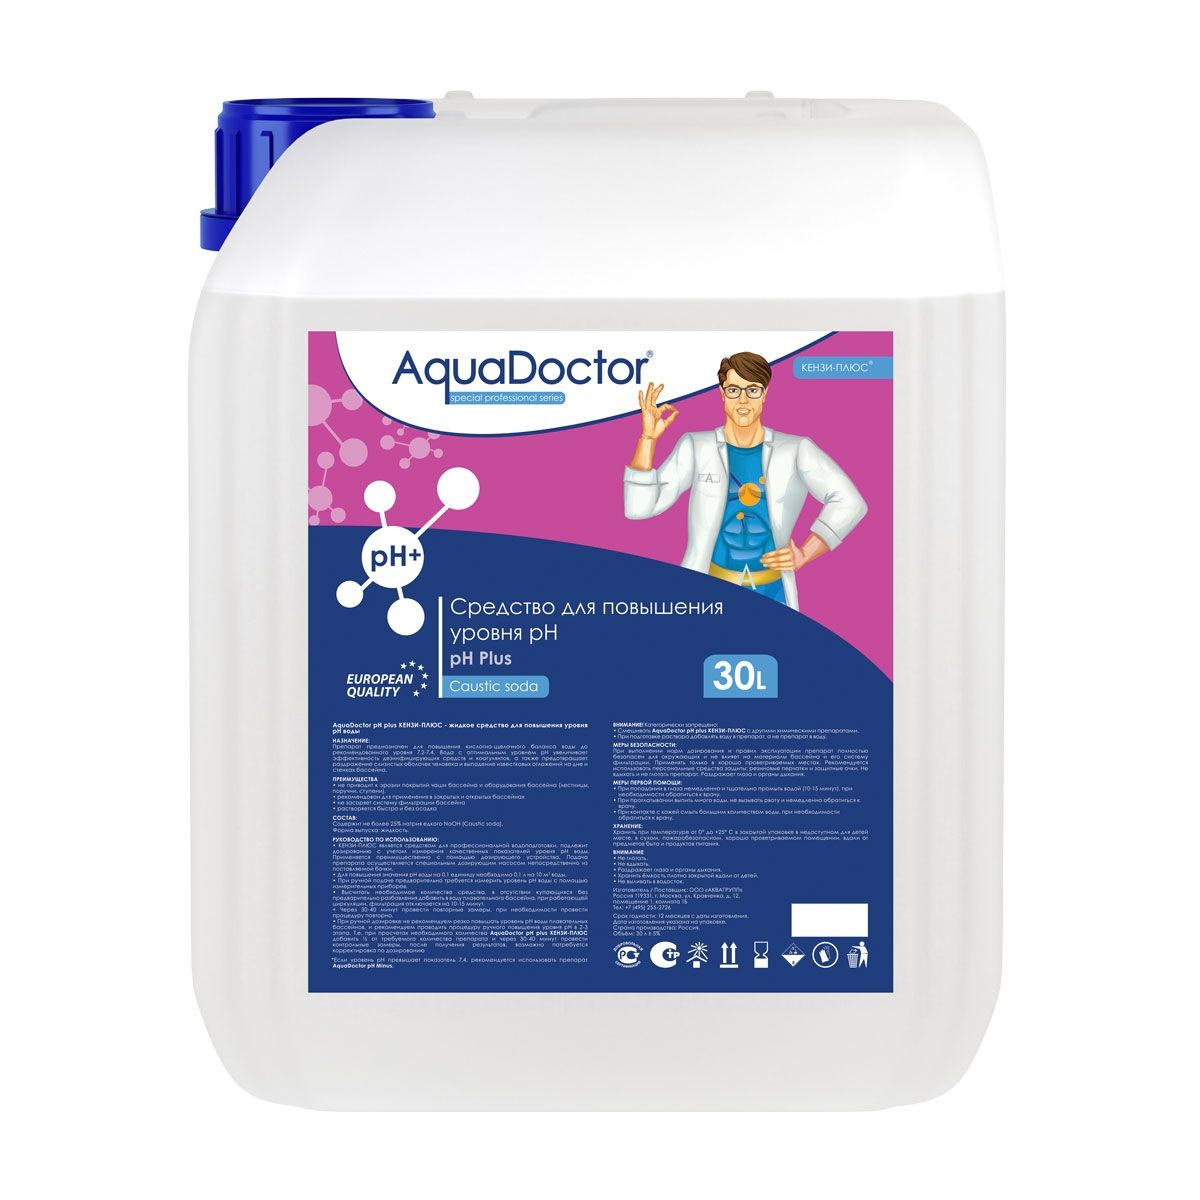 Жидкое средство для повышения уровня pH AquaDoctor pH Plus 30 л. от магазина gidro-z